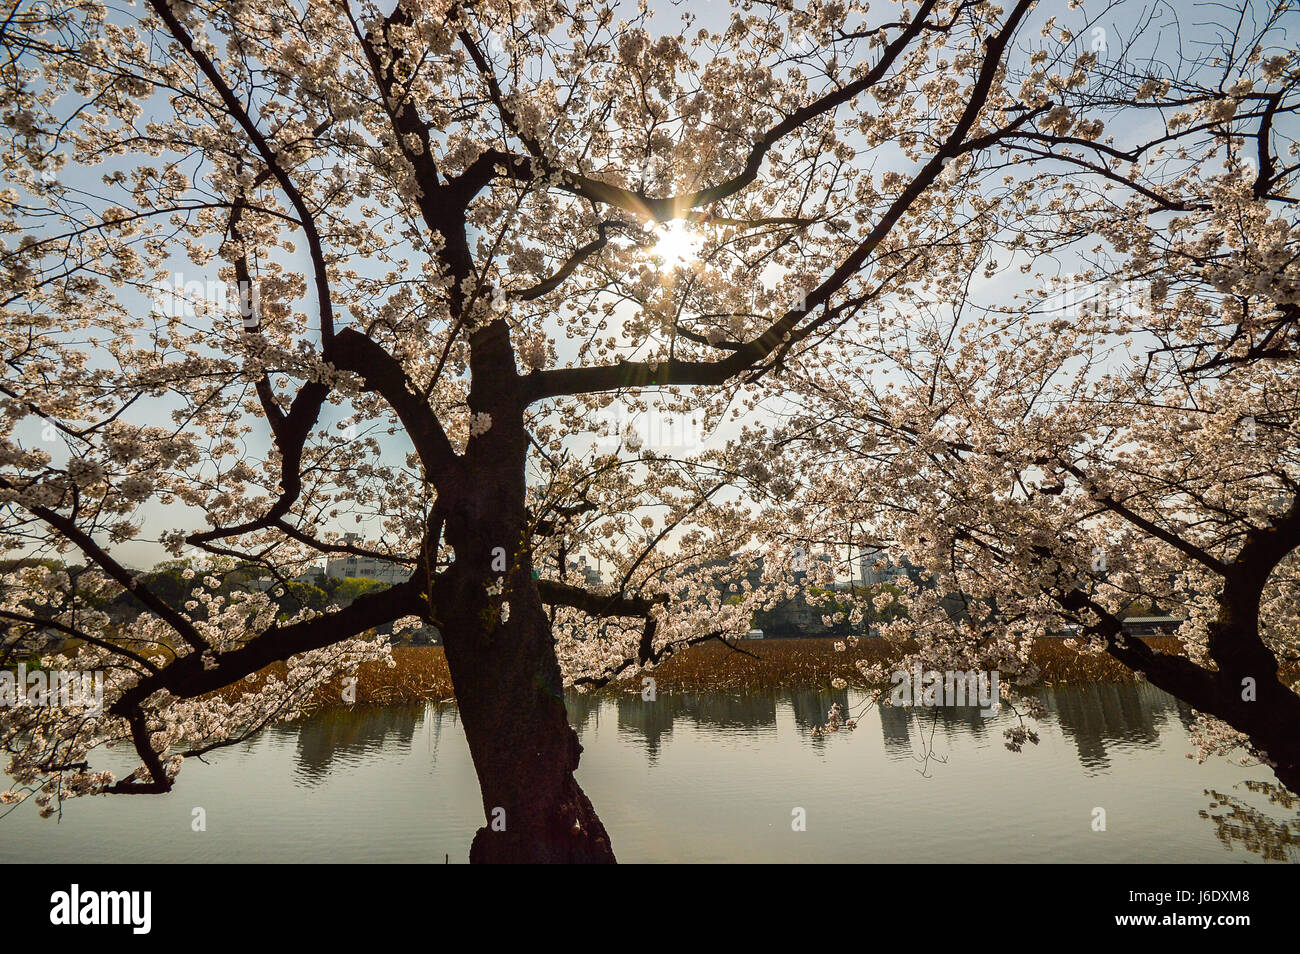 Tokyo, Japan - 2. April 2014: Ueno-Park, weitläufigen öffentlichen Park im Stadtteil Ueno, Tokio. Kirschblüte ist Veranstaltung im Frühjahr Stockfoto